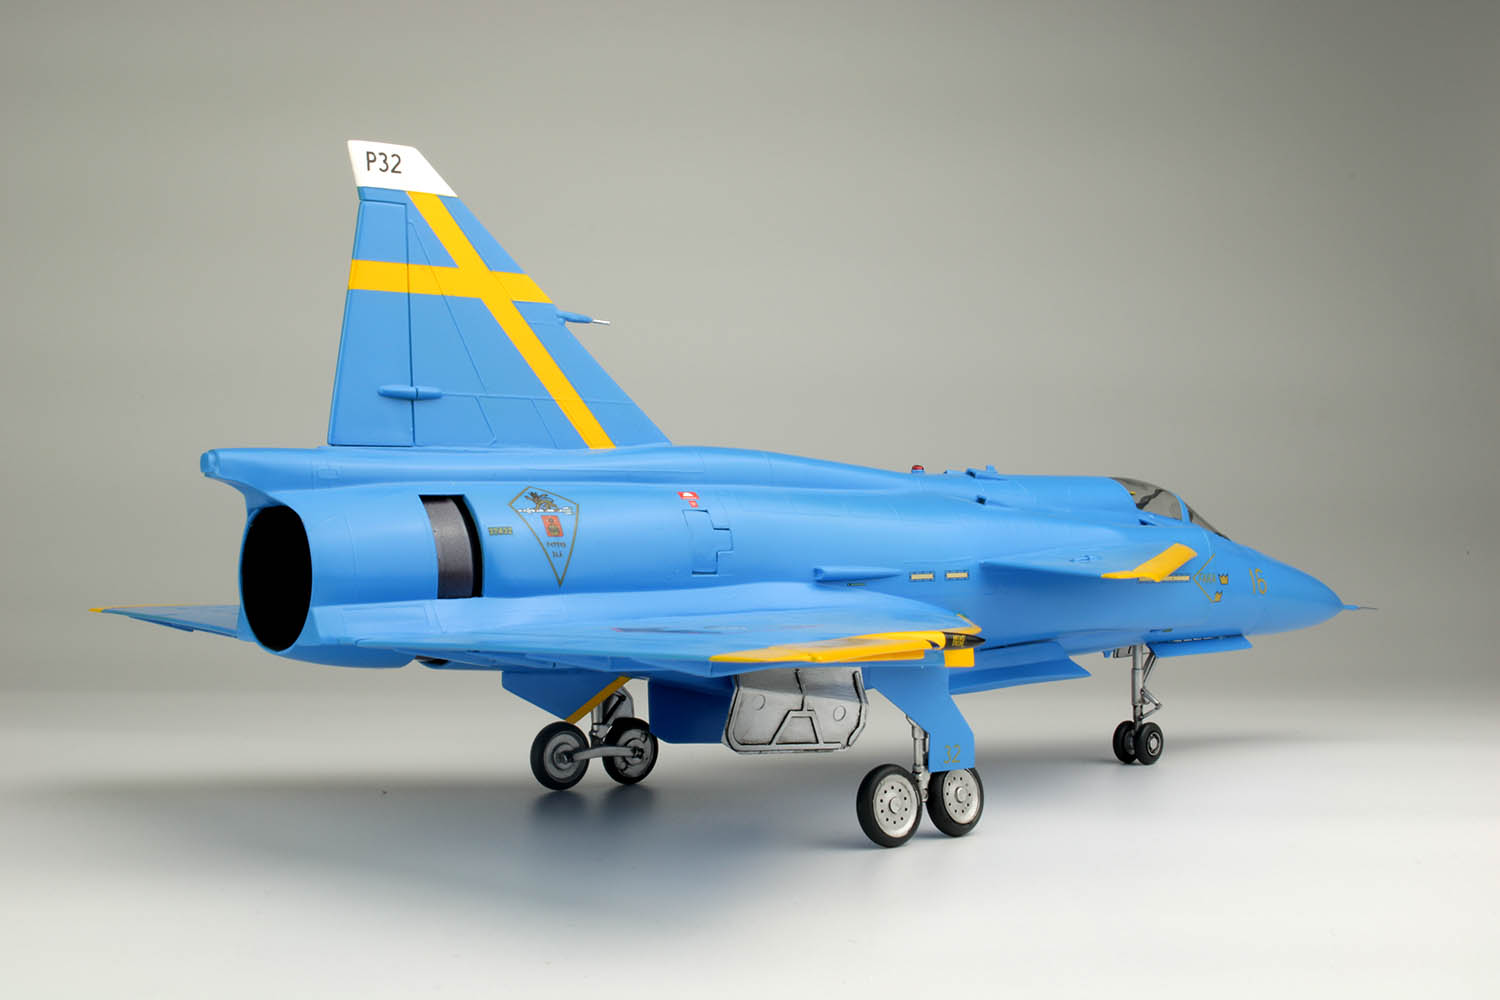 1/48 Swedish Air Force Fighter JA37 Jakt Viggen "Blue Peter"